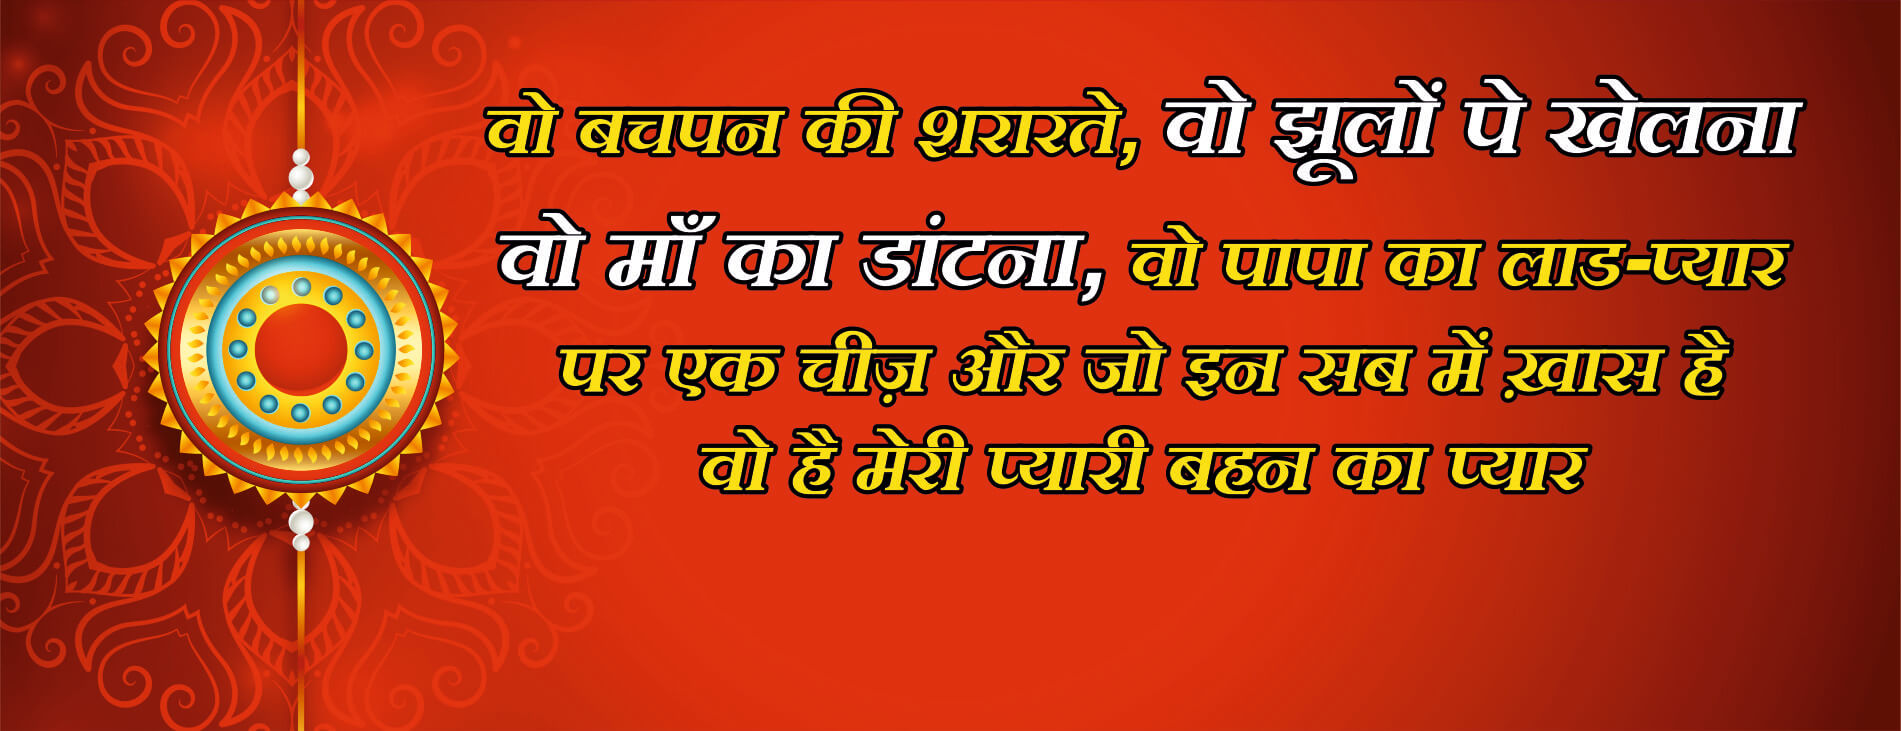 raksha bandhan quotes hindi